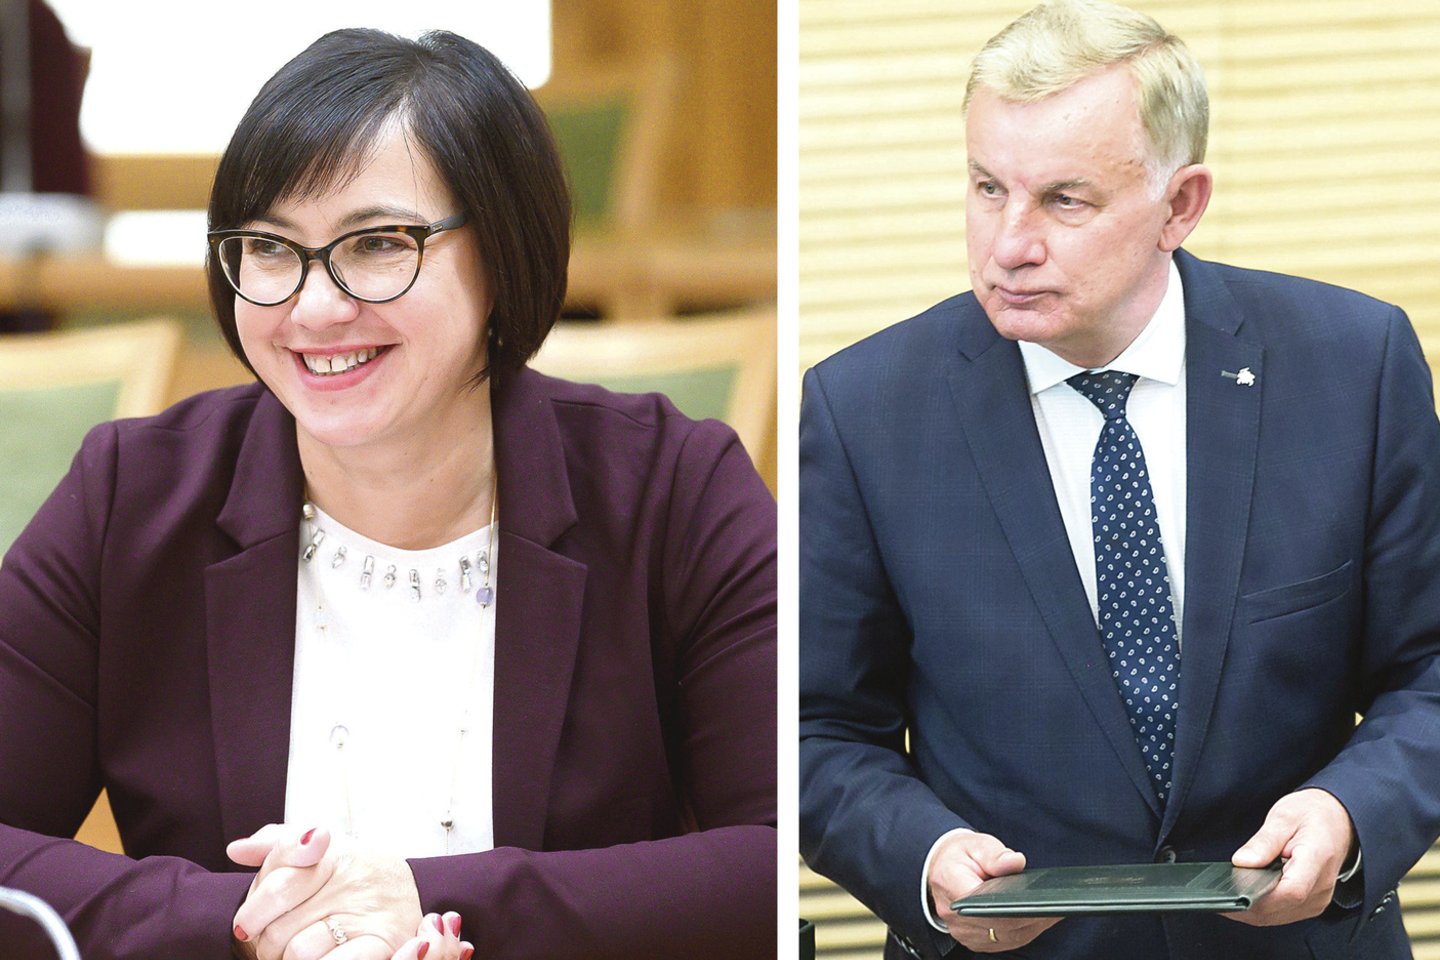 Seimo nariai R.Popovienė ir R.Sinkevičius skirtingai aiškino, kodėl daugelis parlamentarų padėjėjų oficialiai neatostogauja.